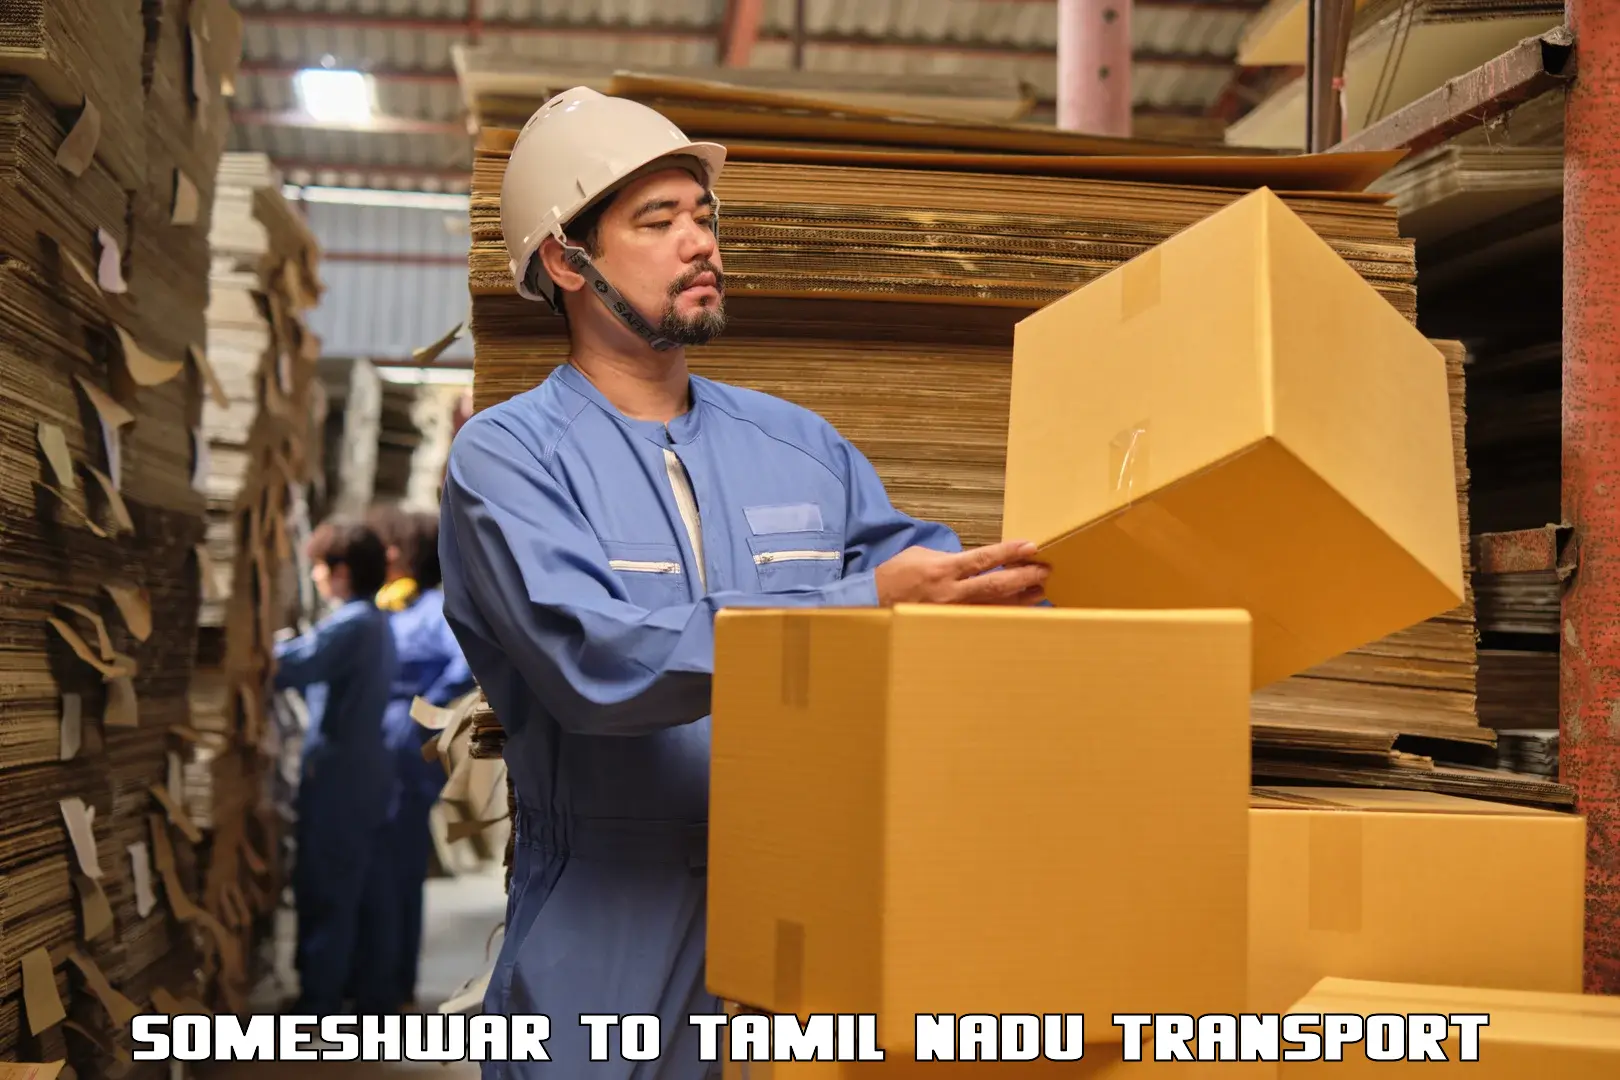 Furniture transport service Someshwar to Chennai